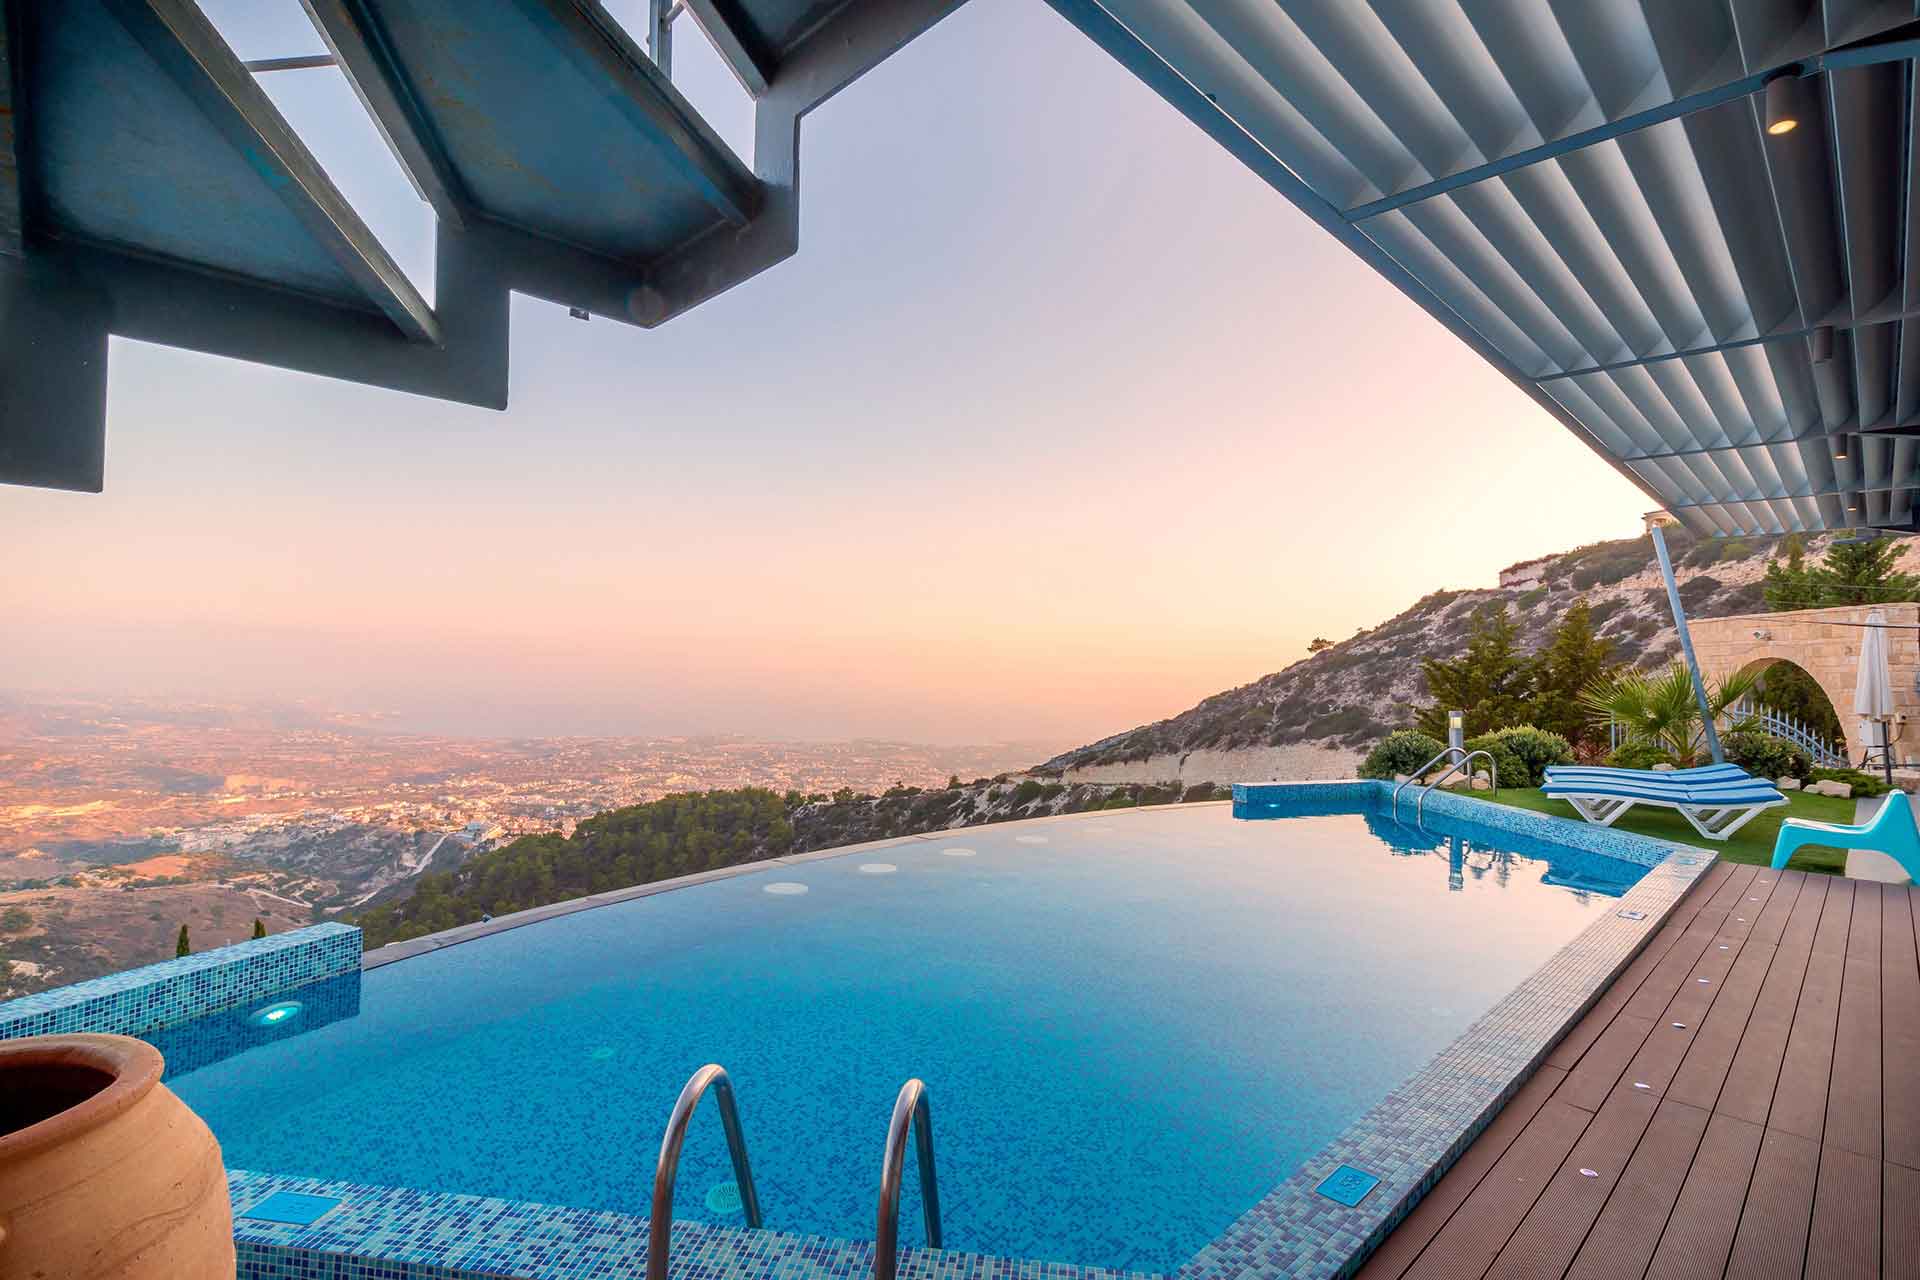 Lire la suite à propos de l’article La villa de luxe : location idéale de vacances